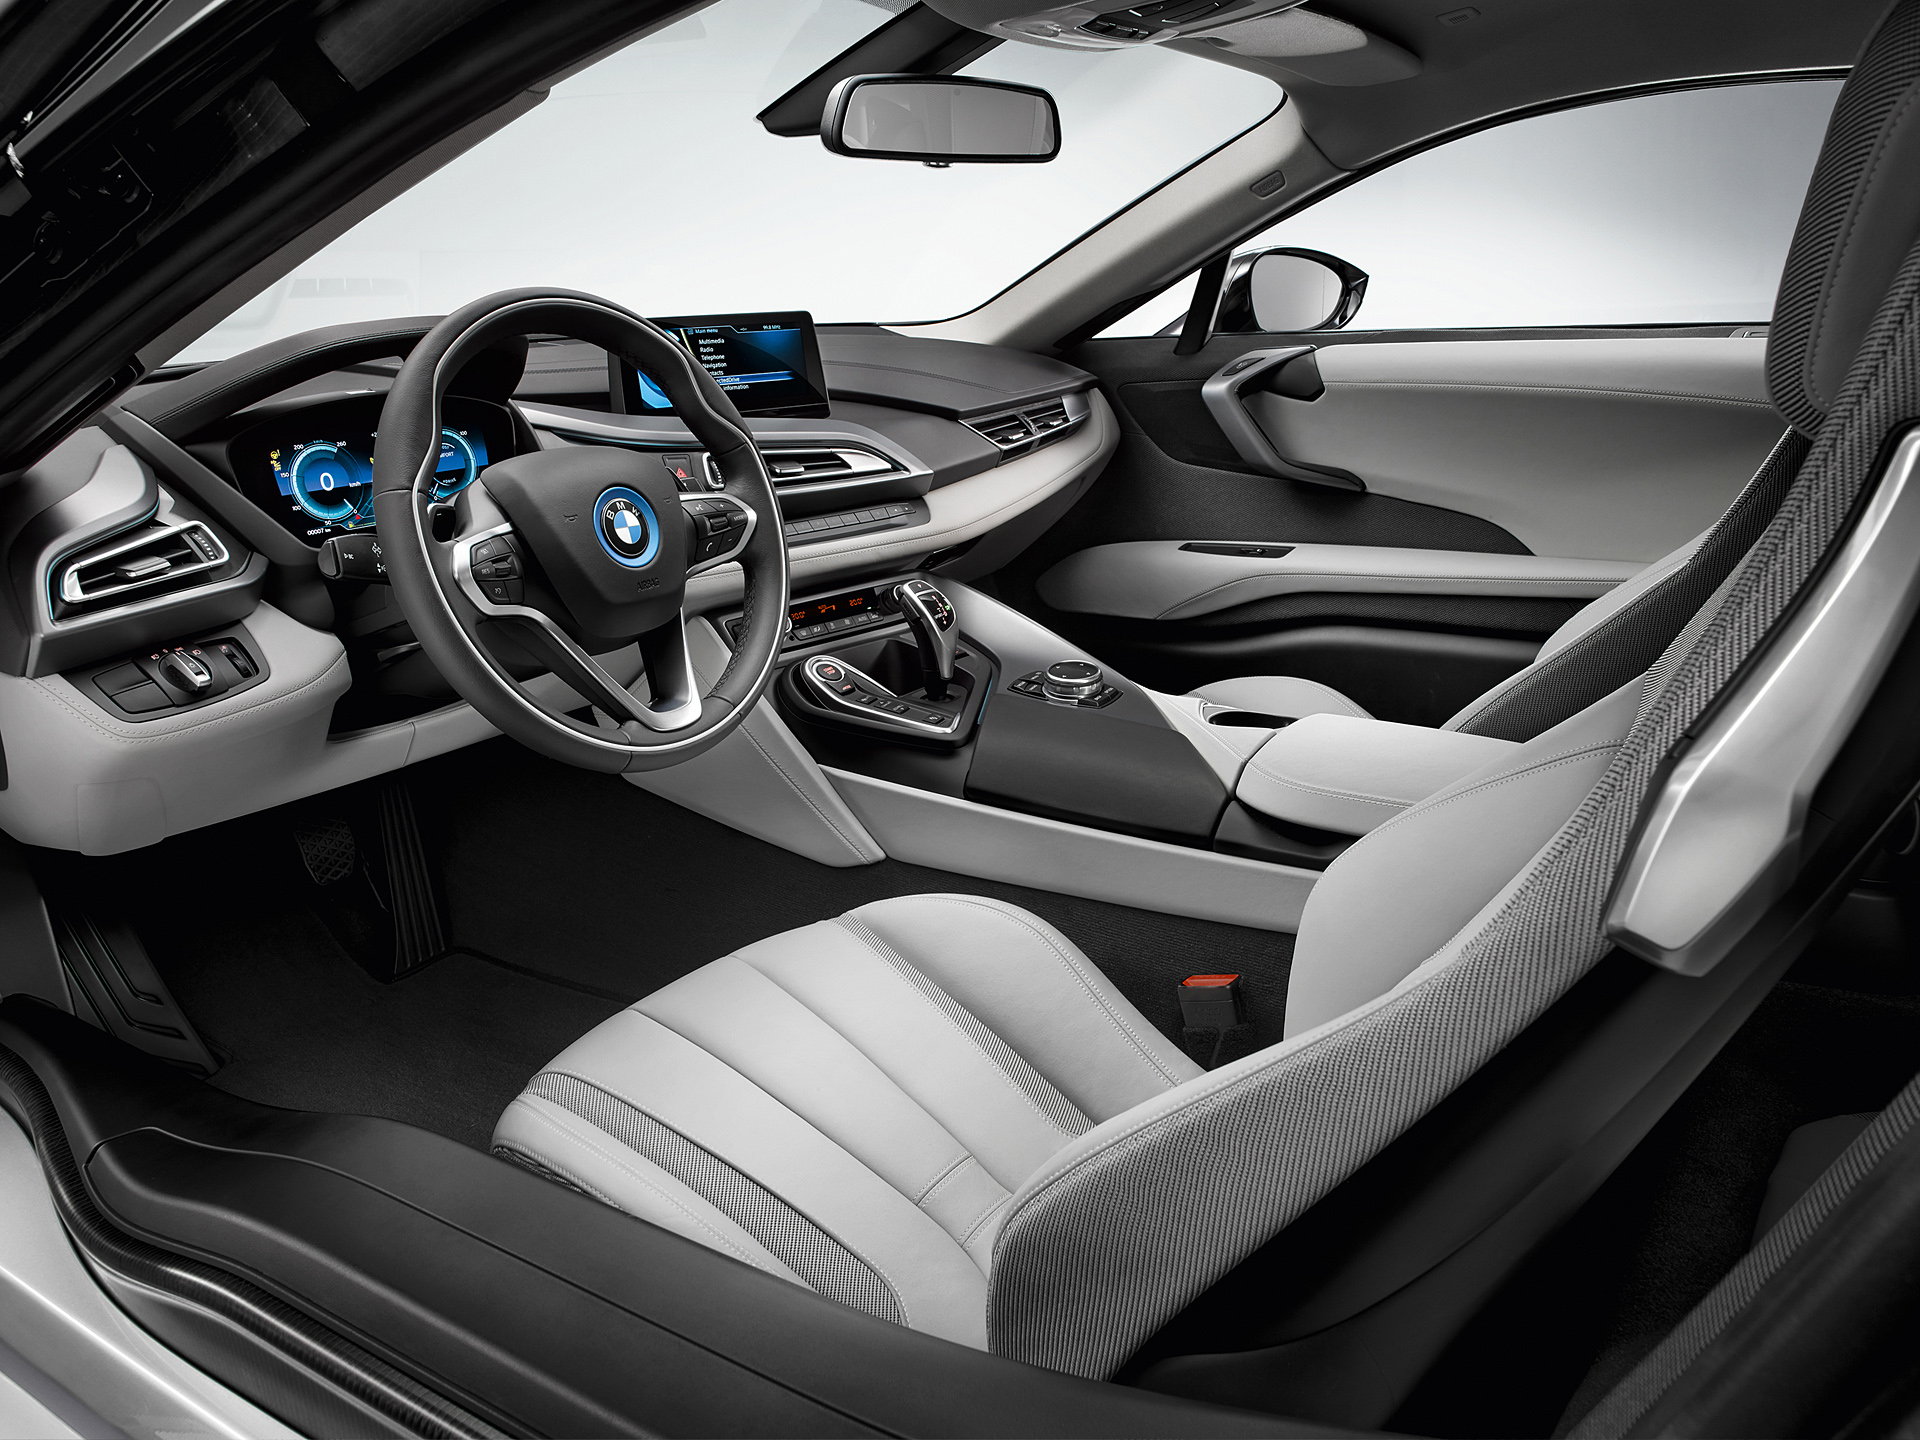  2015 BMW i8 Wallpaper.